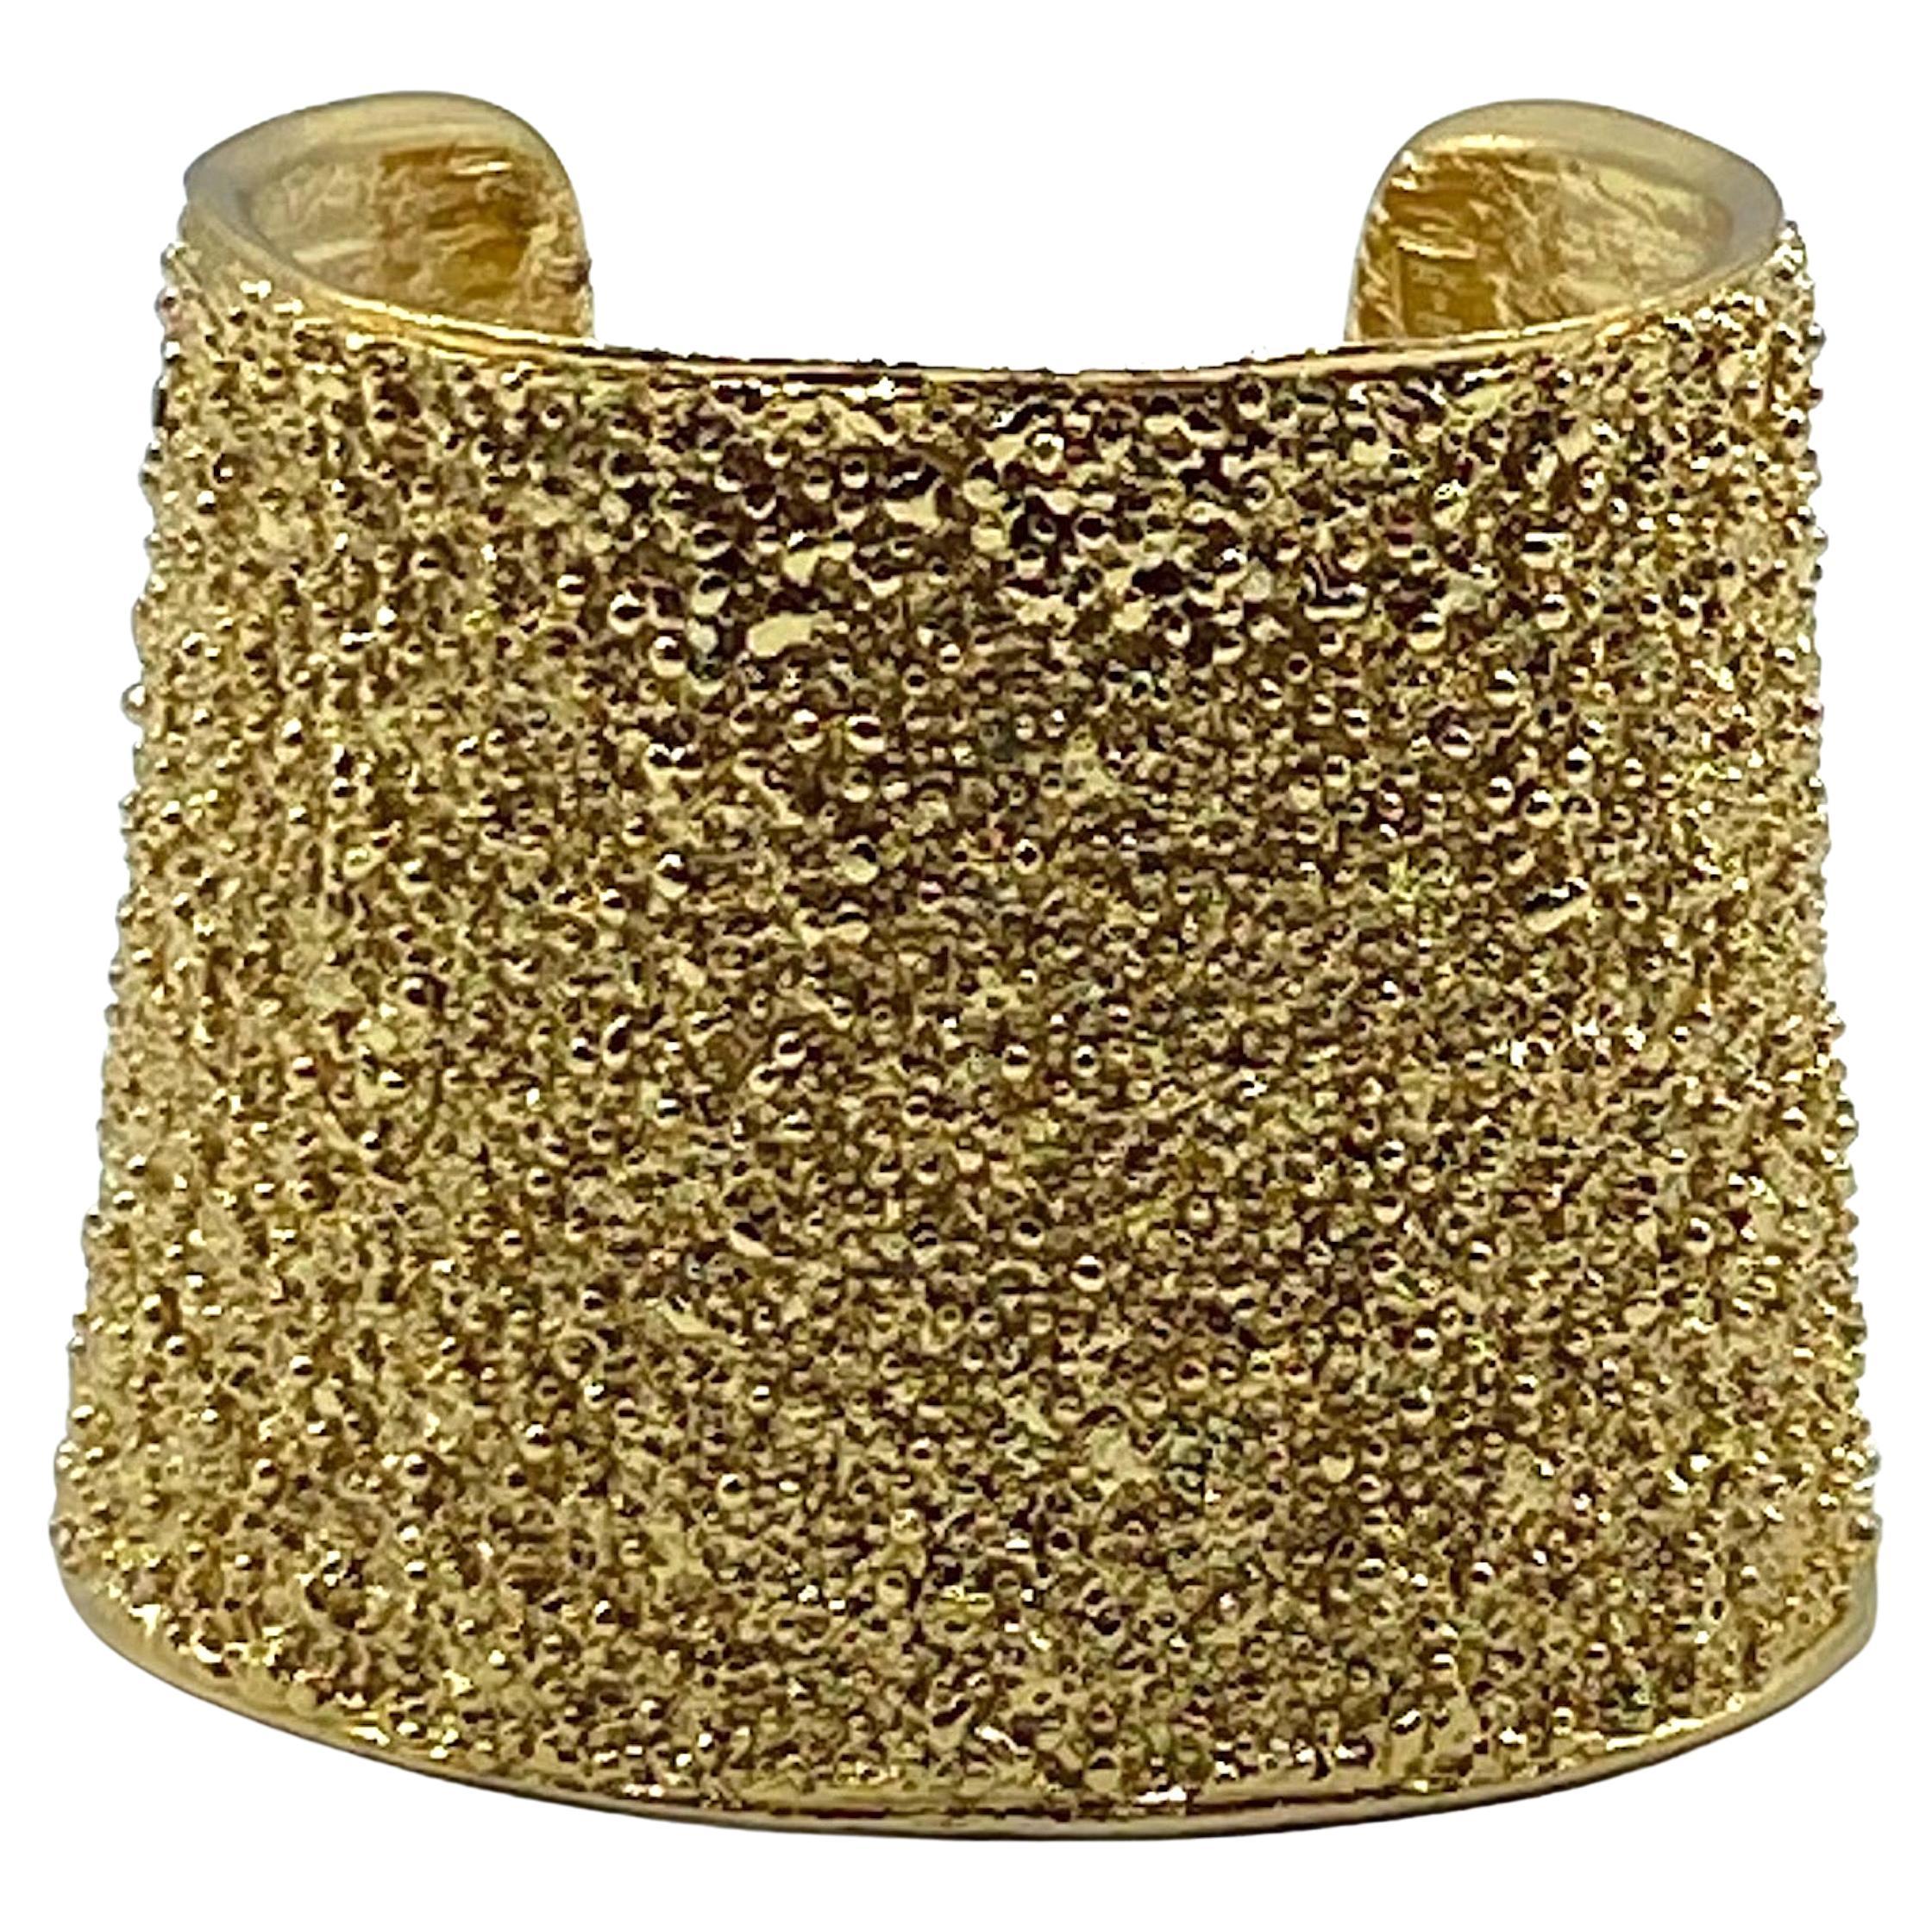 Yves Saint Laurent 1980s / 1990s Gold Nugget Wide Cuff Bracelet